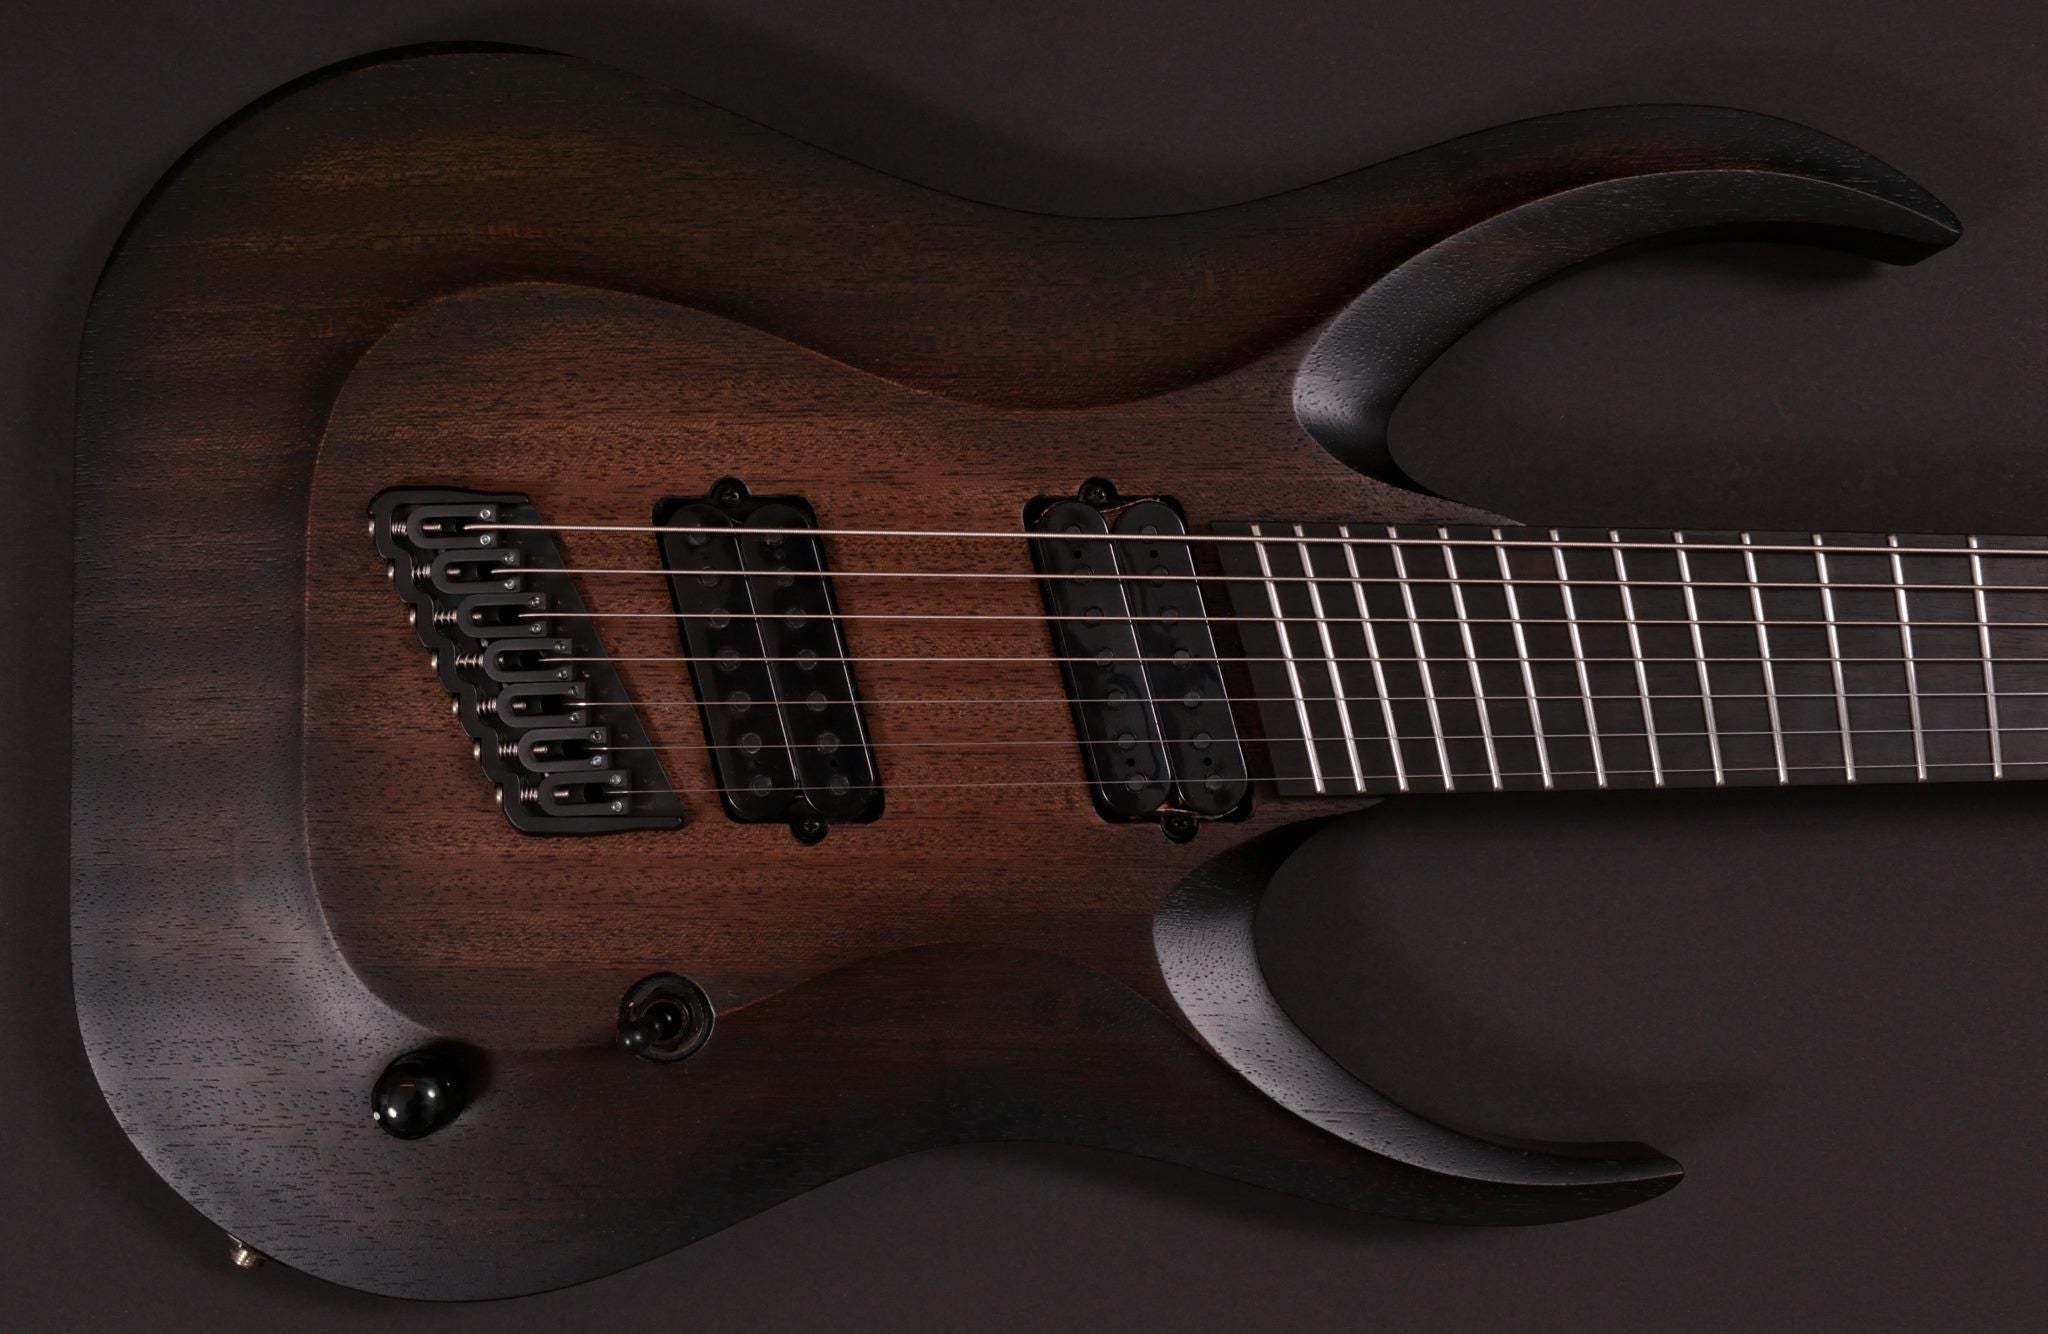 Kayzer　Black　Wicked　–　727　Guitars　Coal　Burst　Body　Over　Mahogany　Baritone:　HAPAS　Guitars